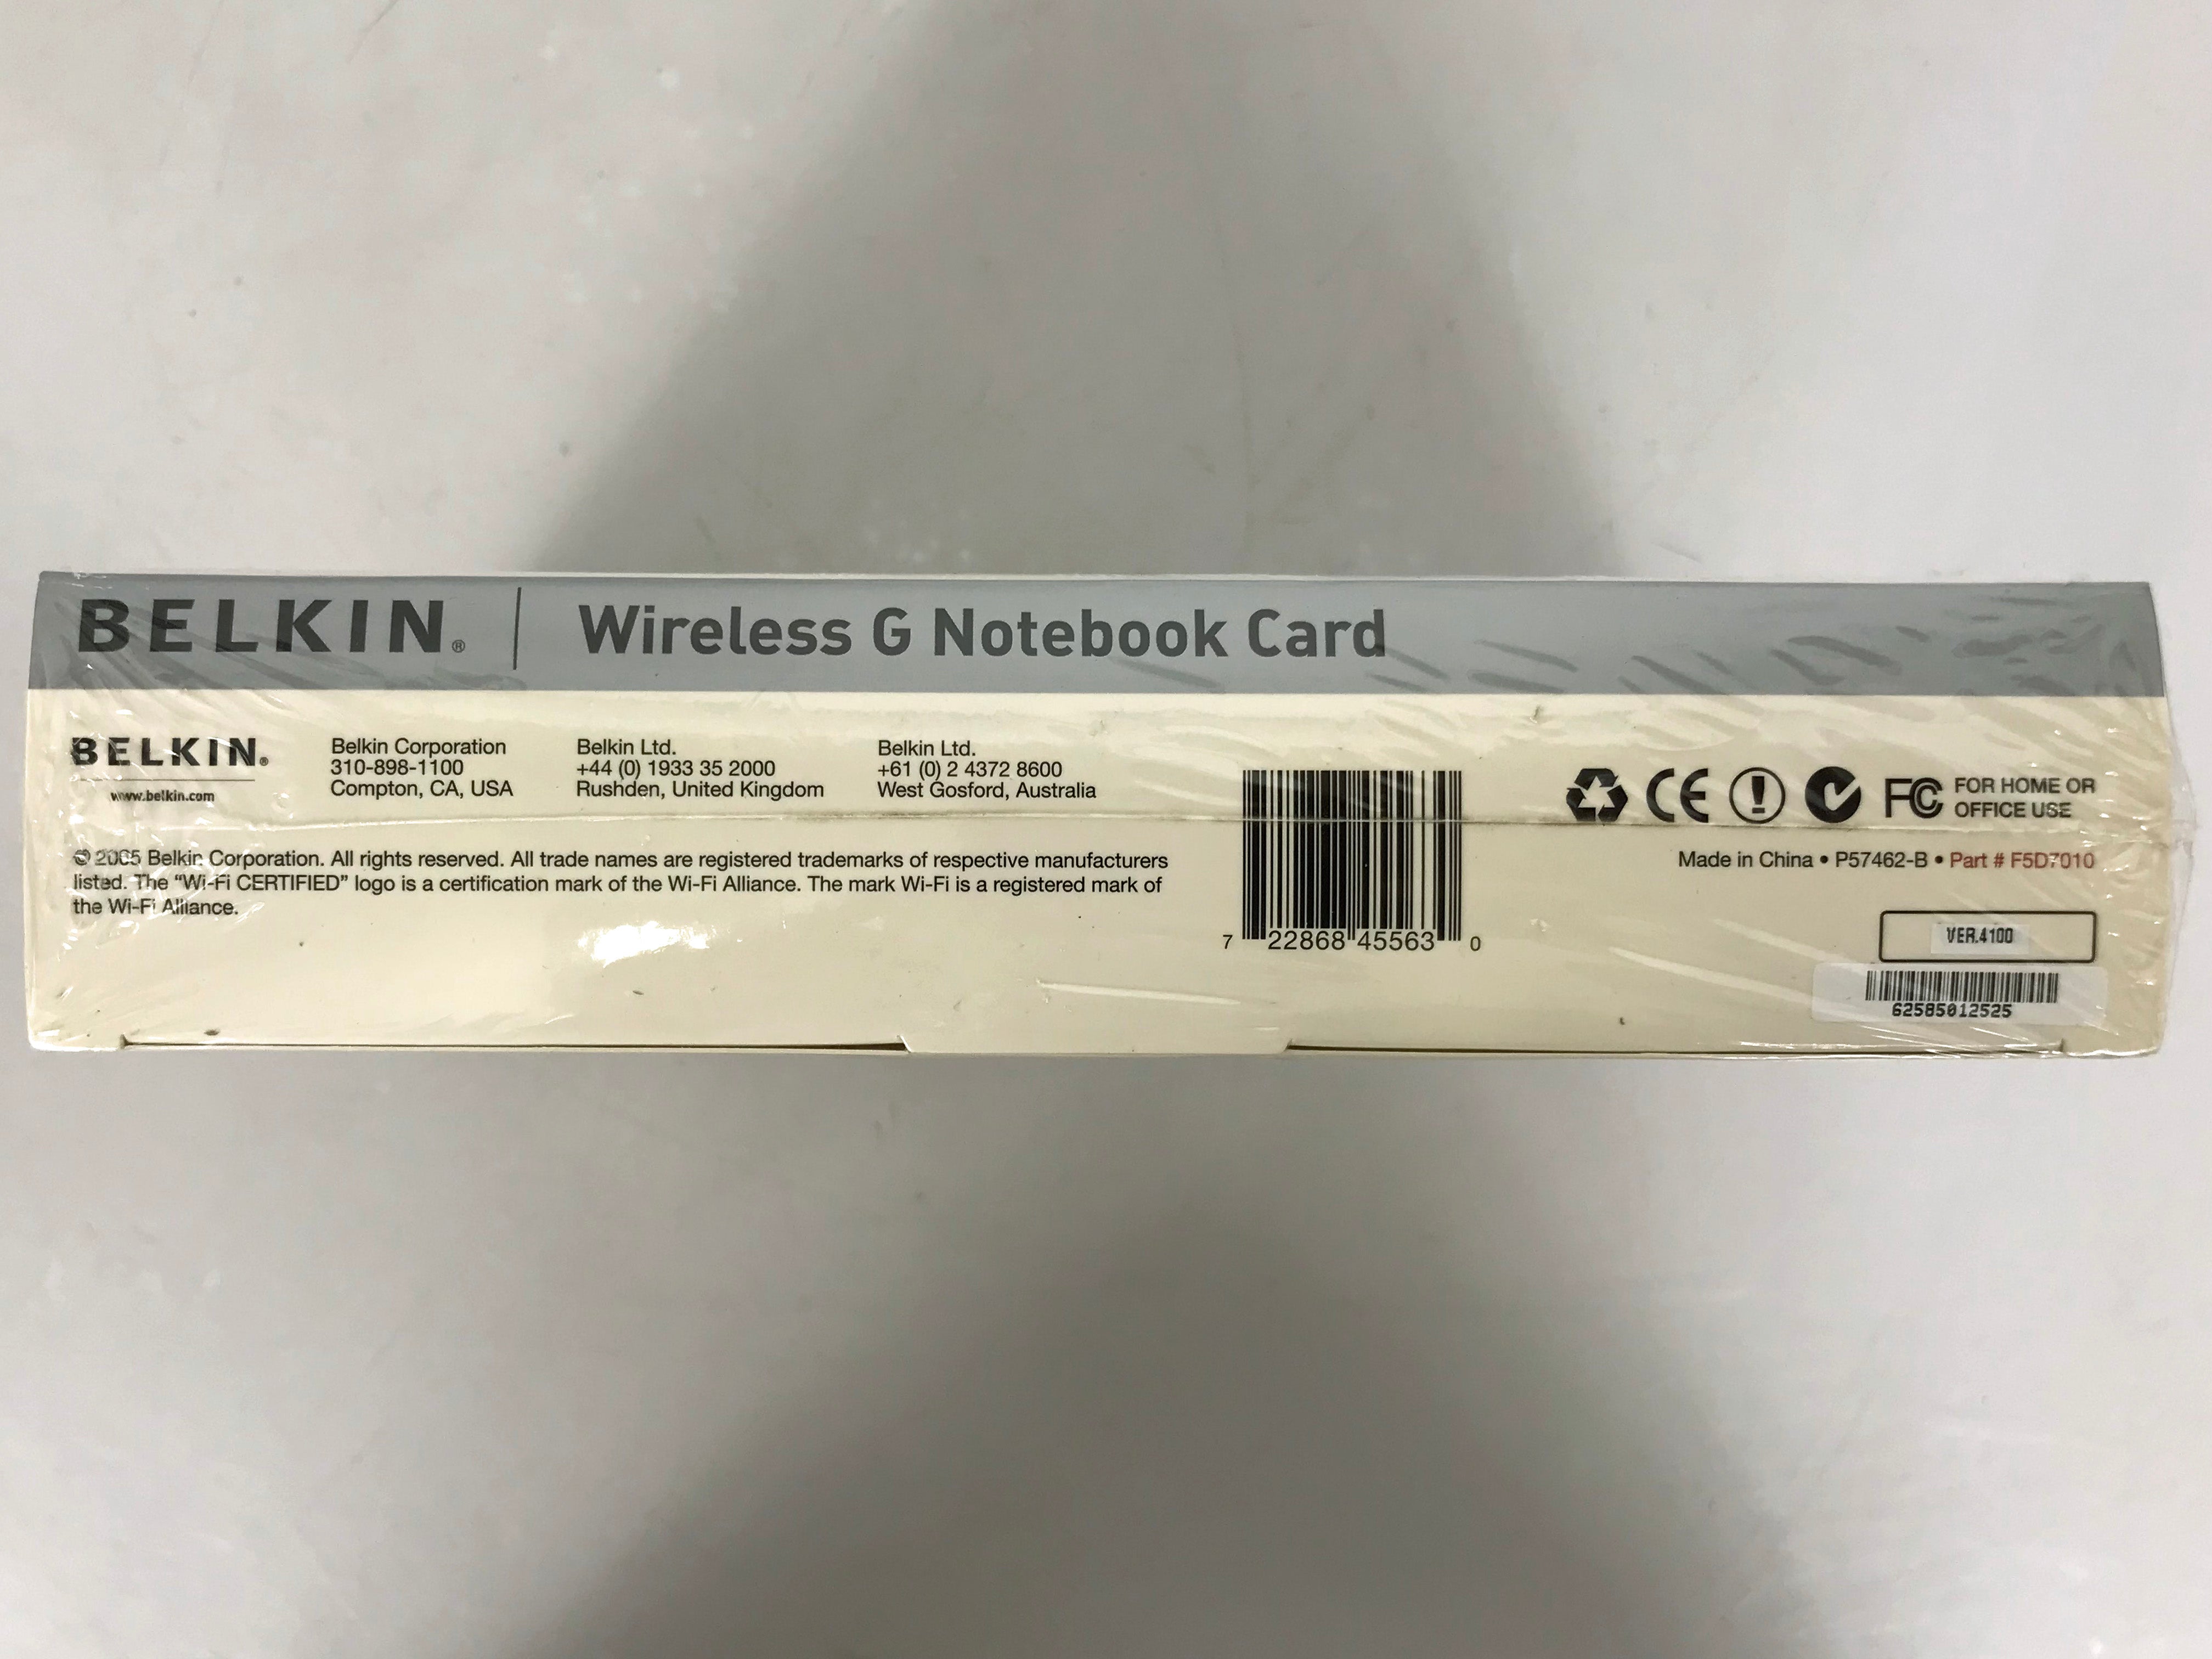 Belkin F5D7010 Wireless G Network Notebook Card